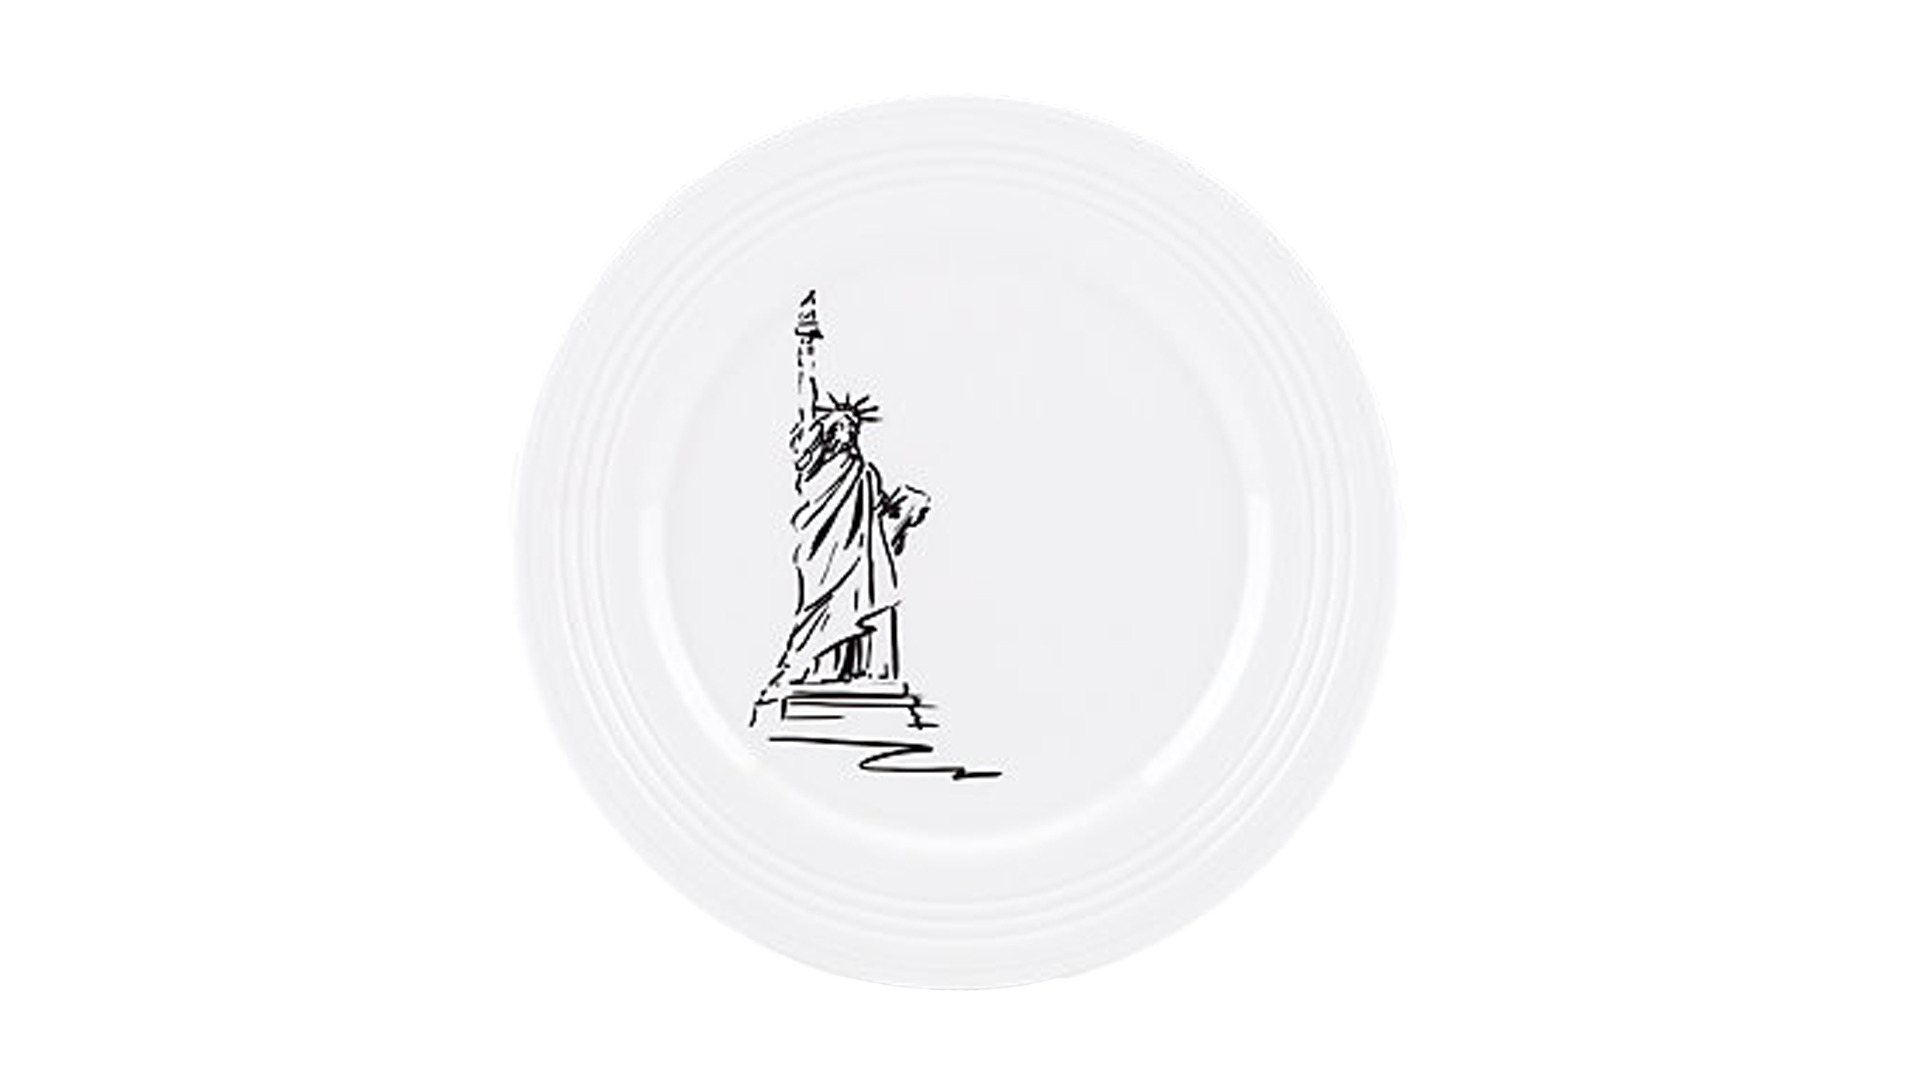 Набор из 6 тарелок акцентных Lenox Нью Йорк.Аллея Тин-Кен 23 см